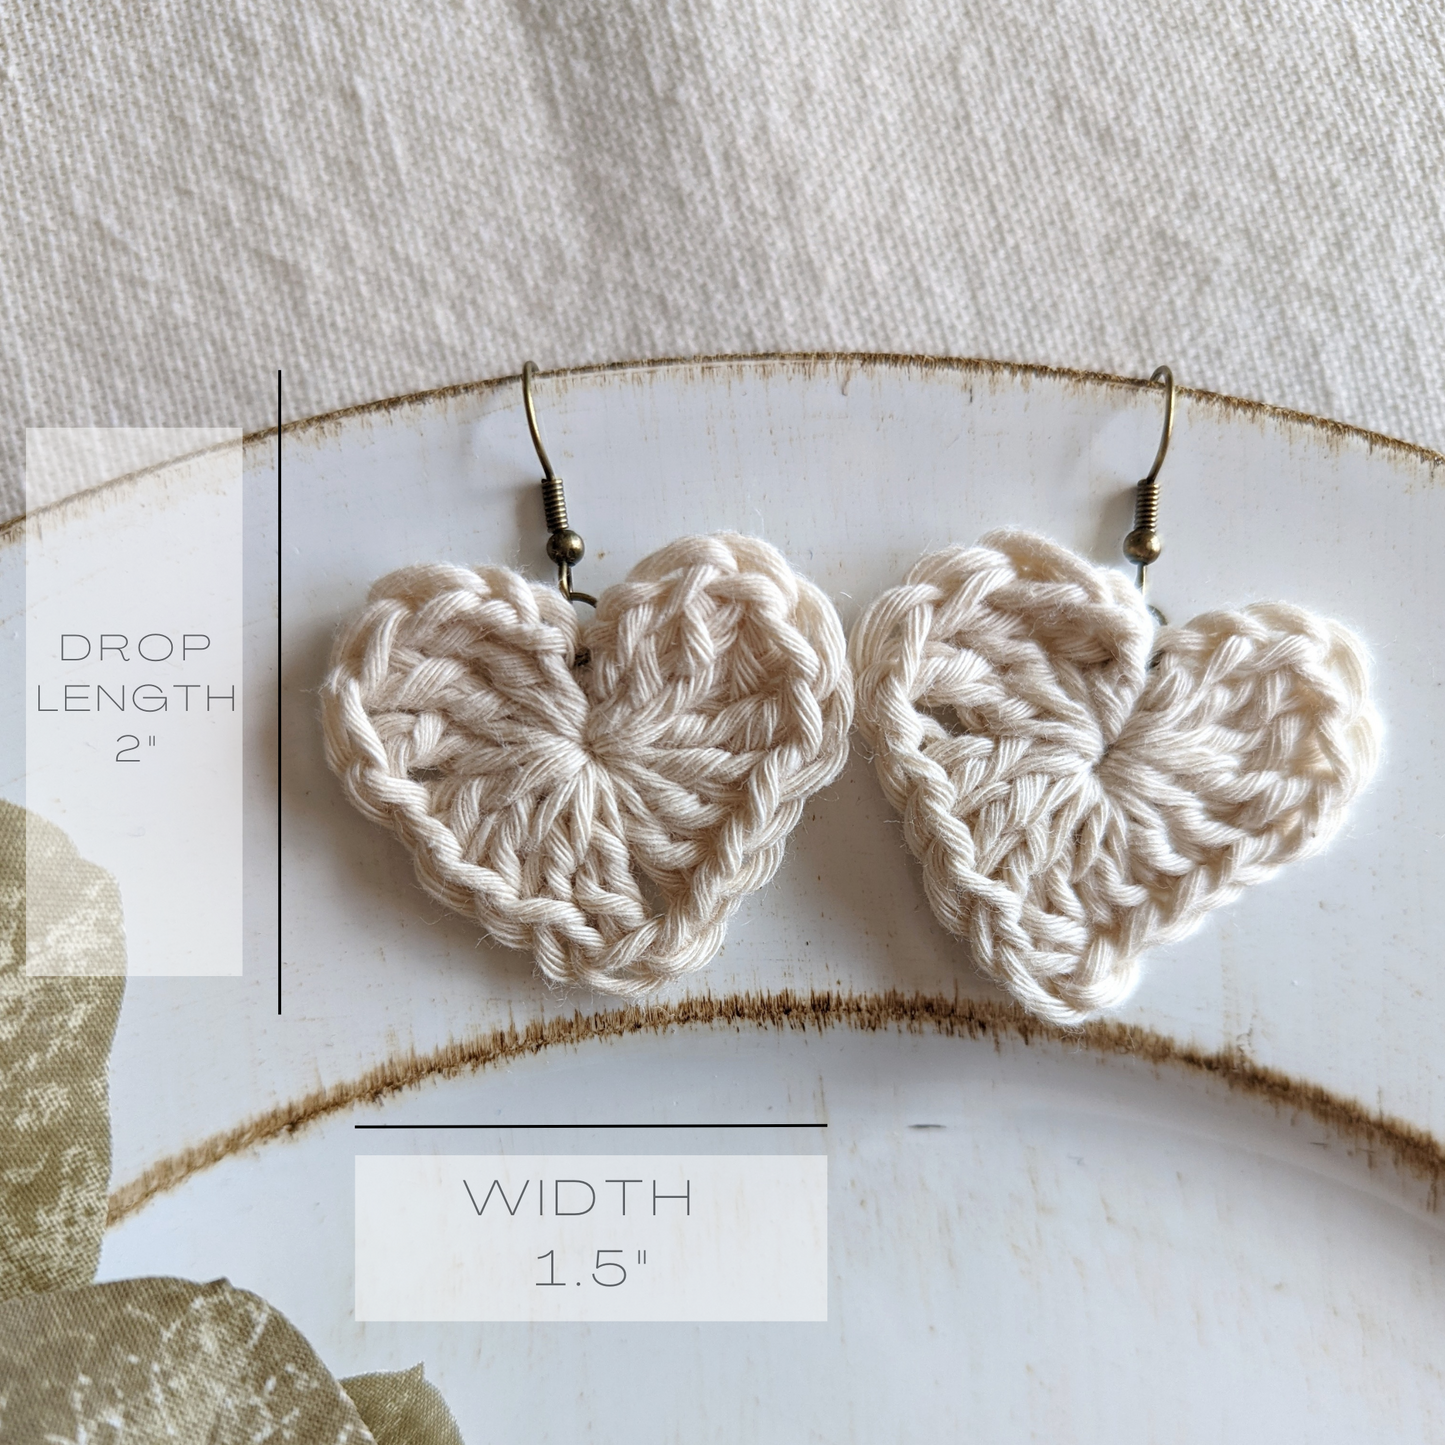 Heart Crochet Earrings